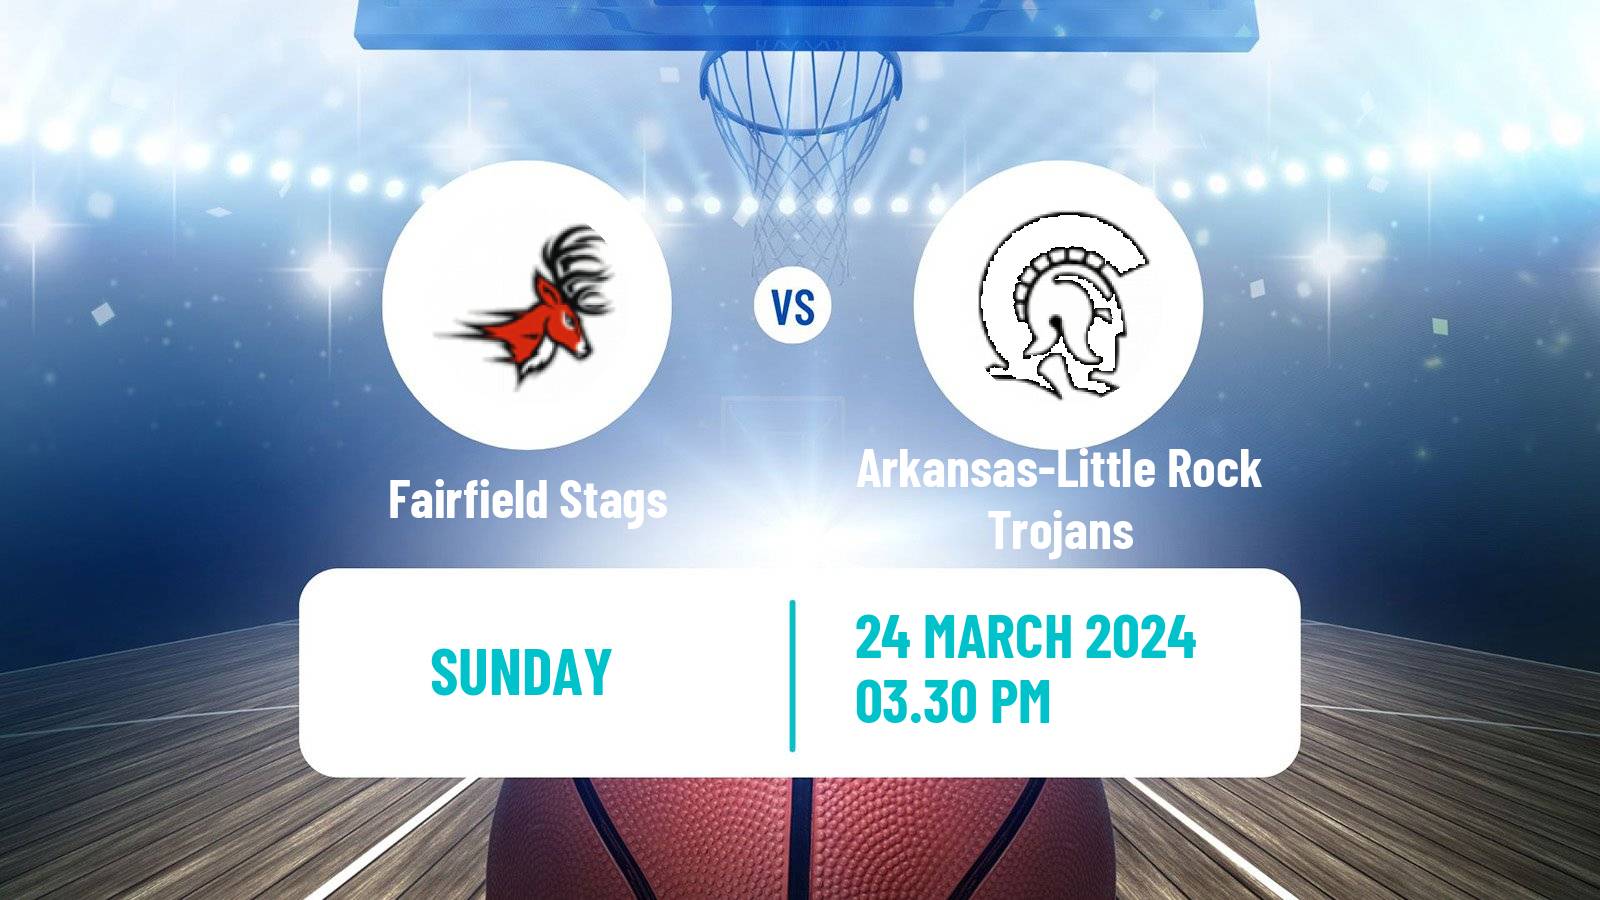 Basketball CBI Fairfield Stags - Arkansas-Little Rock Trojans